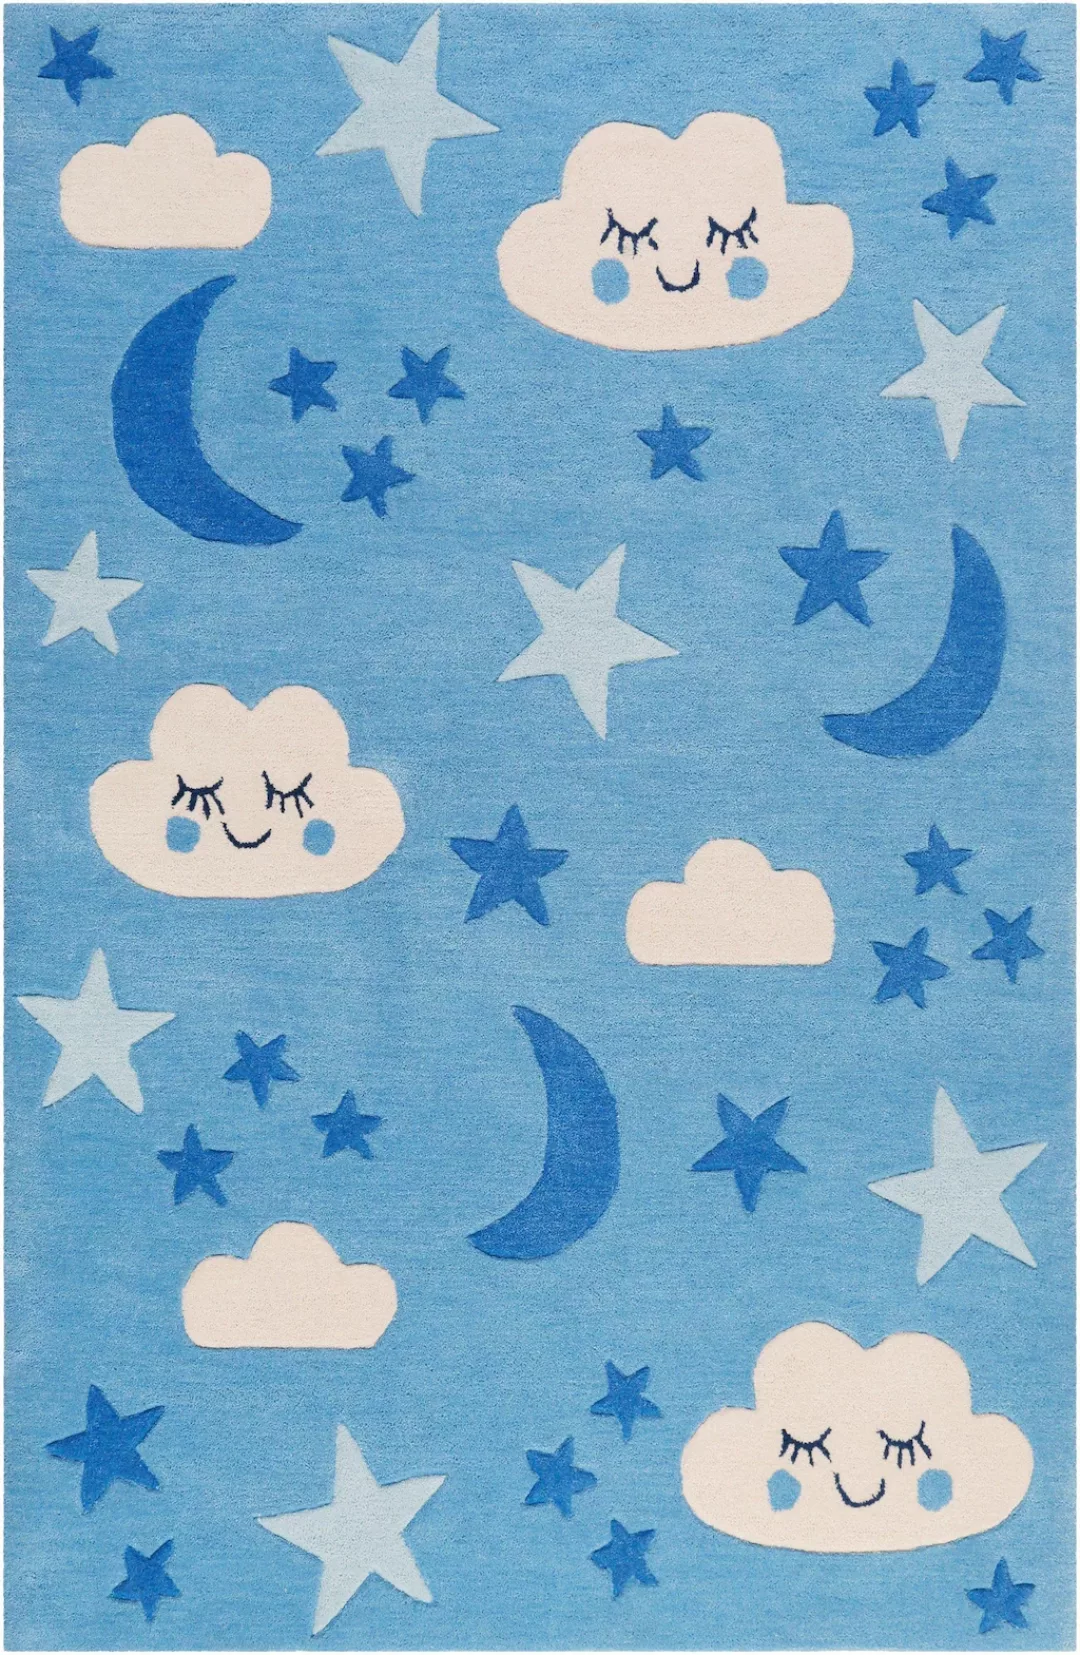 SMART KIDS Kinderteppich »LaLeLu«, rechteckig, Mond Sterne Wolken, Konturen günstig online kaufen